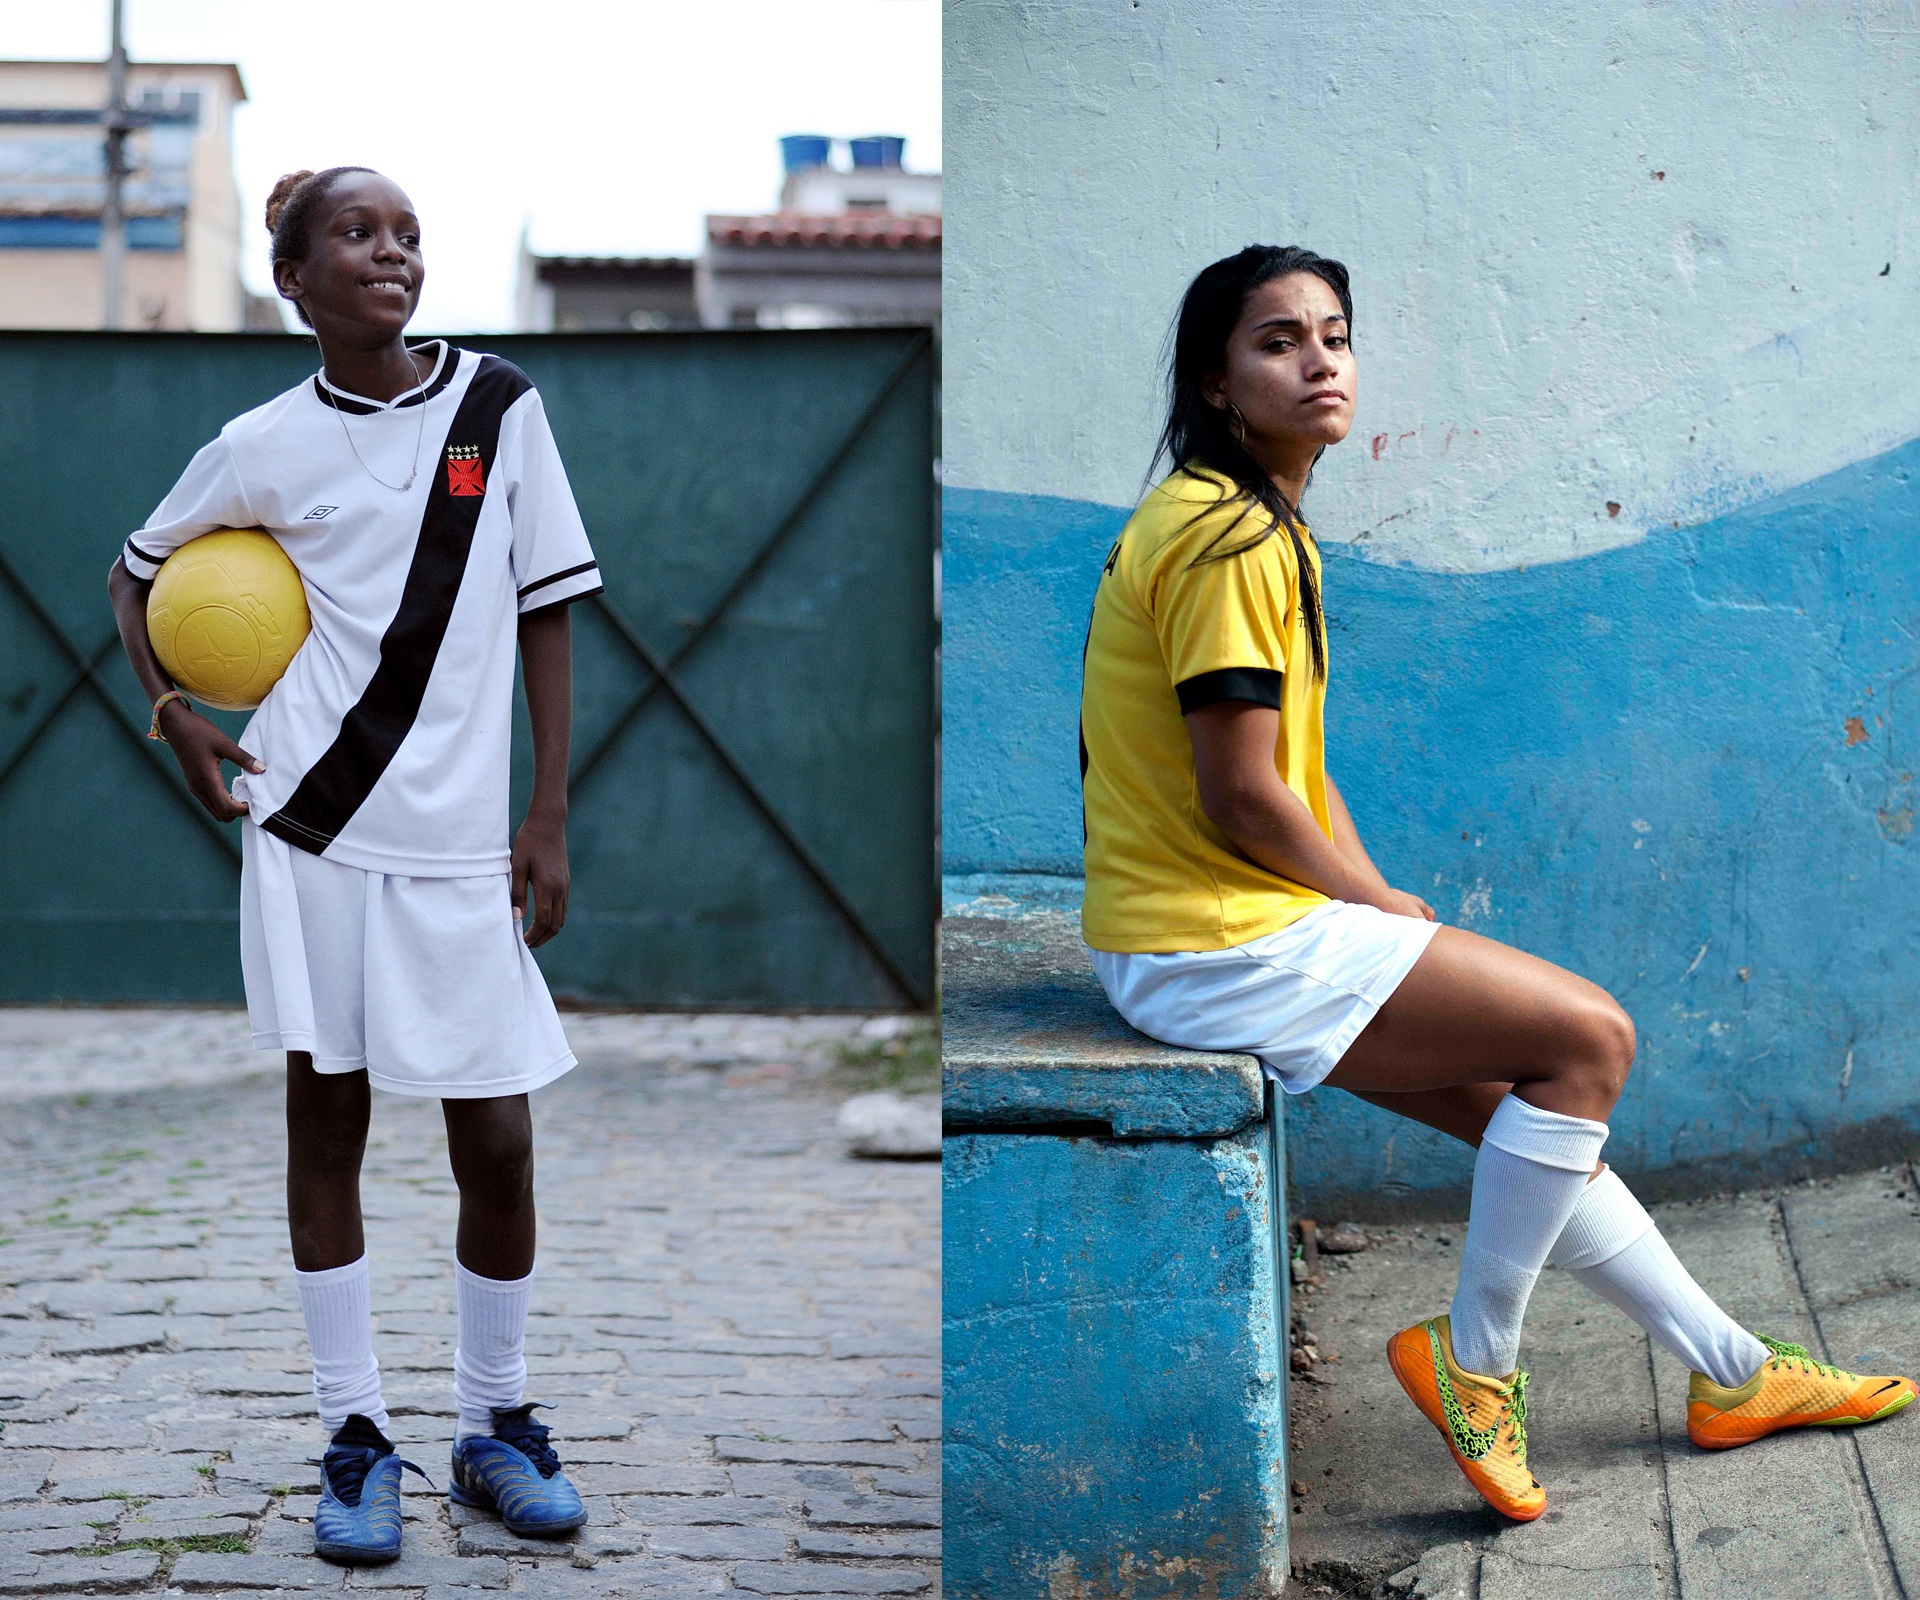 The feminist faces of Brazilian soccer